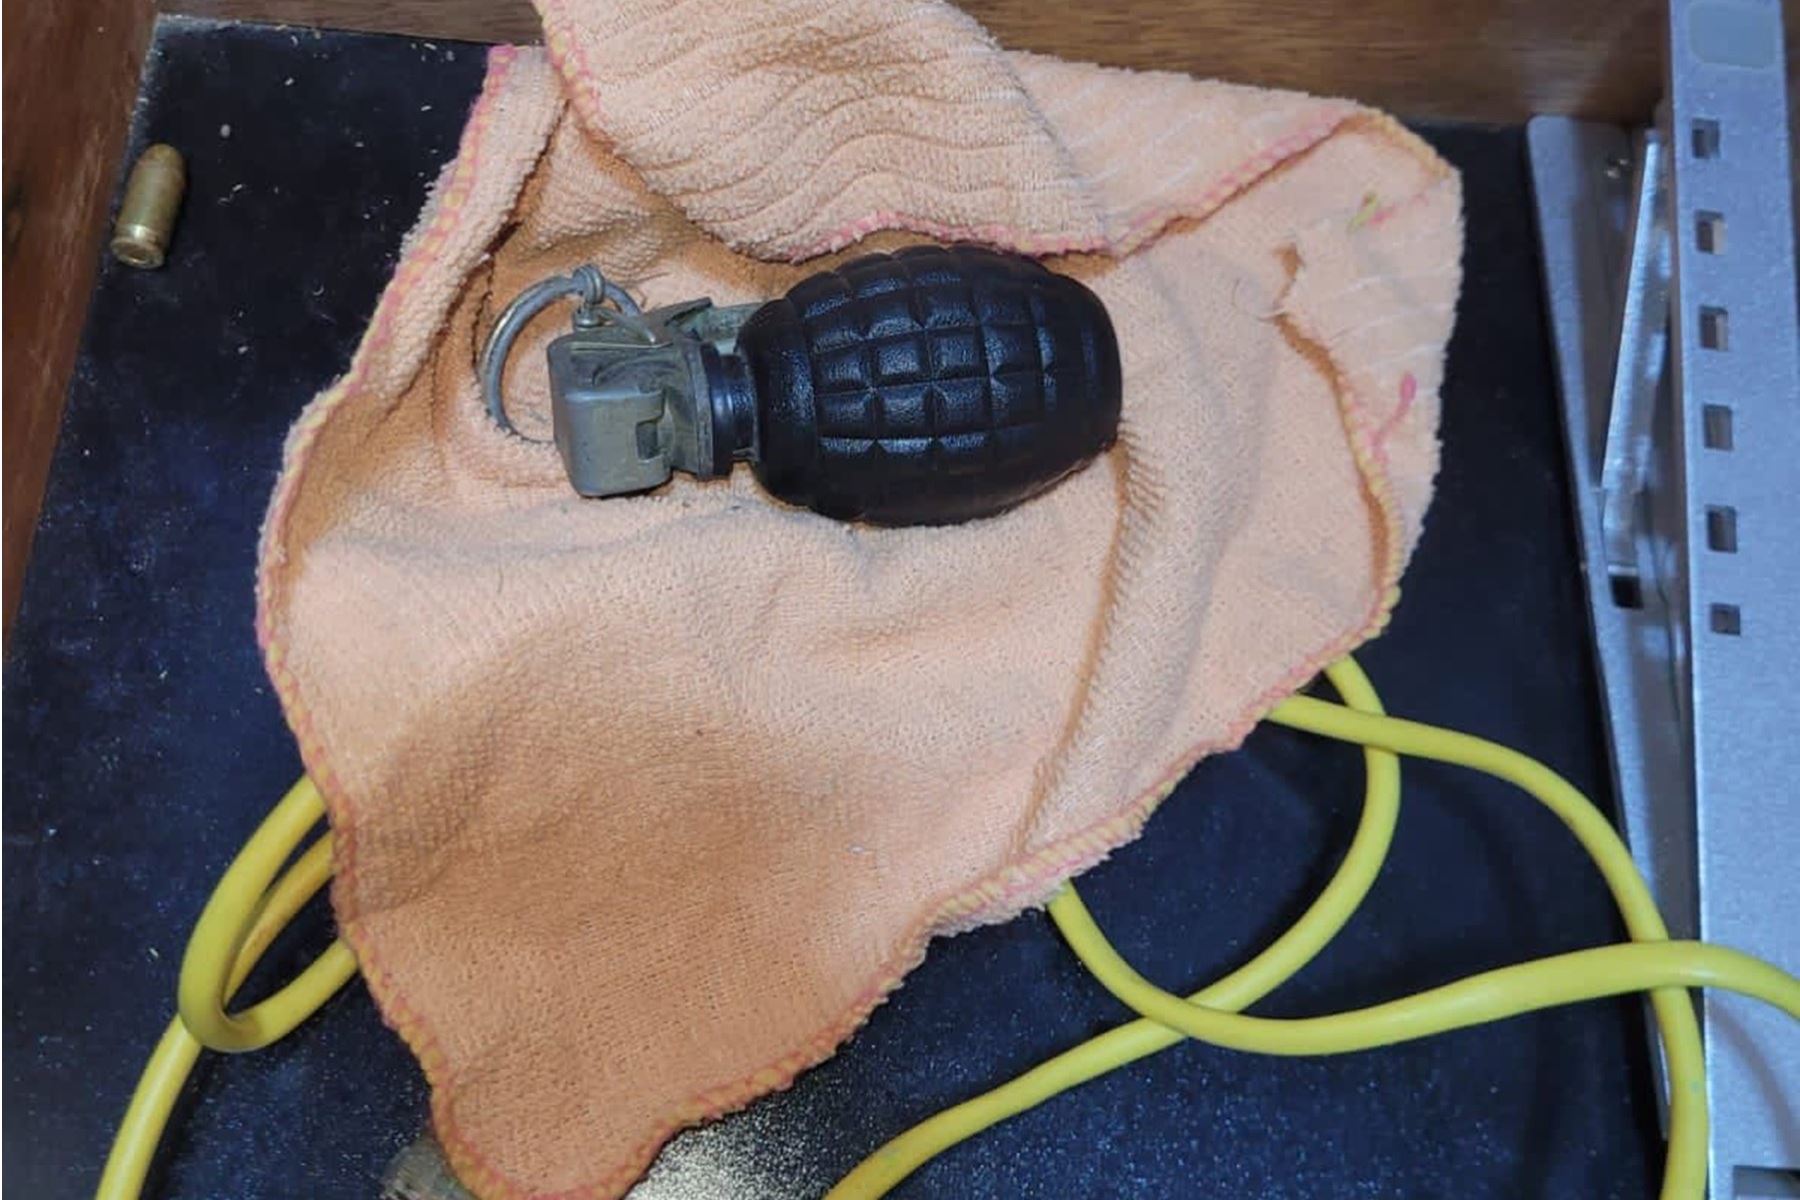 El arma y la granada fueron remitidos a la unidad especializada de la PNP para la respectiva pericia balística y su homologación con otros hechos criminales. Foto: ANDINA/Difusión